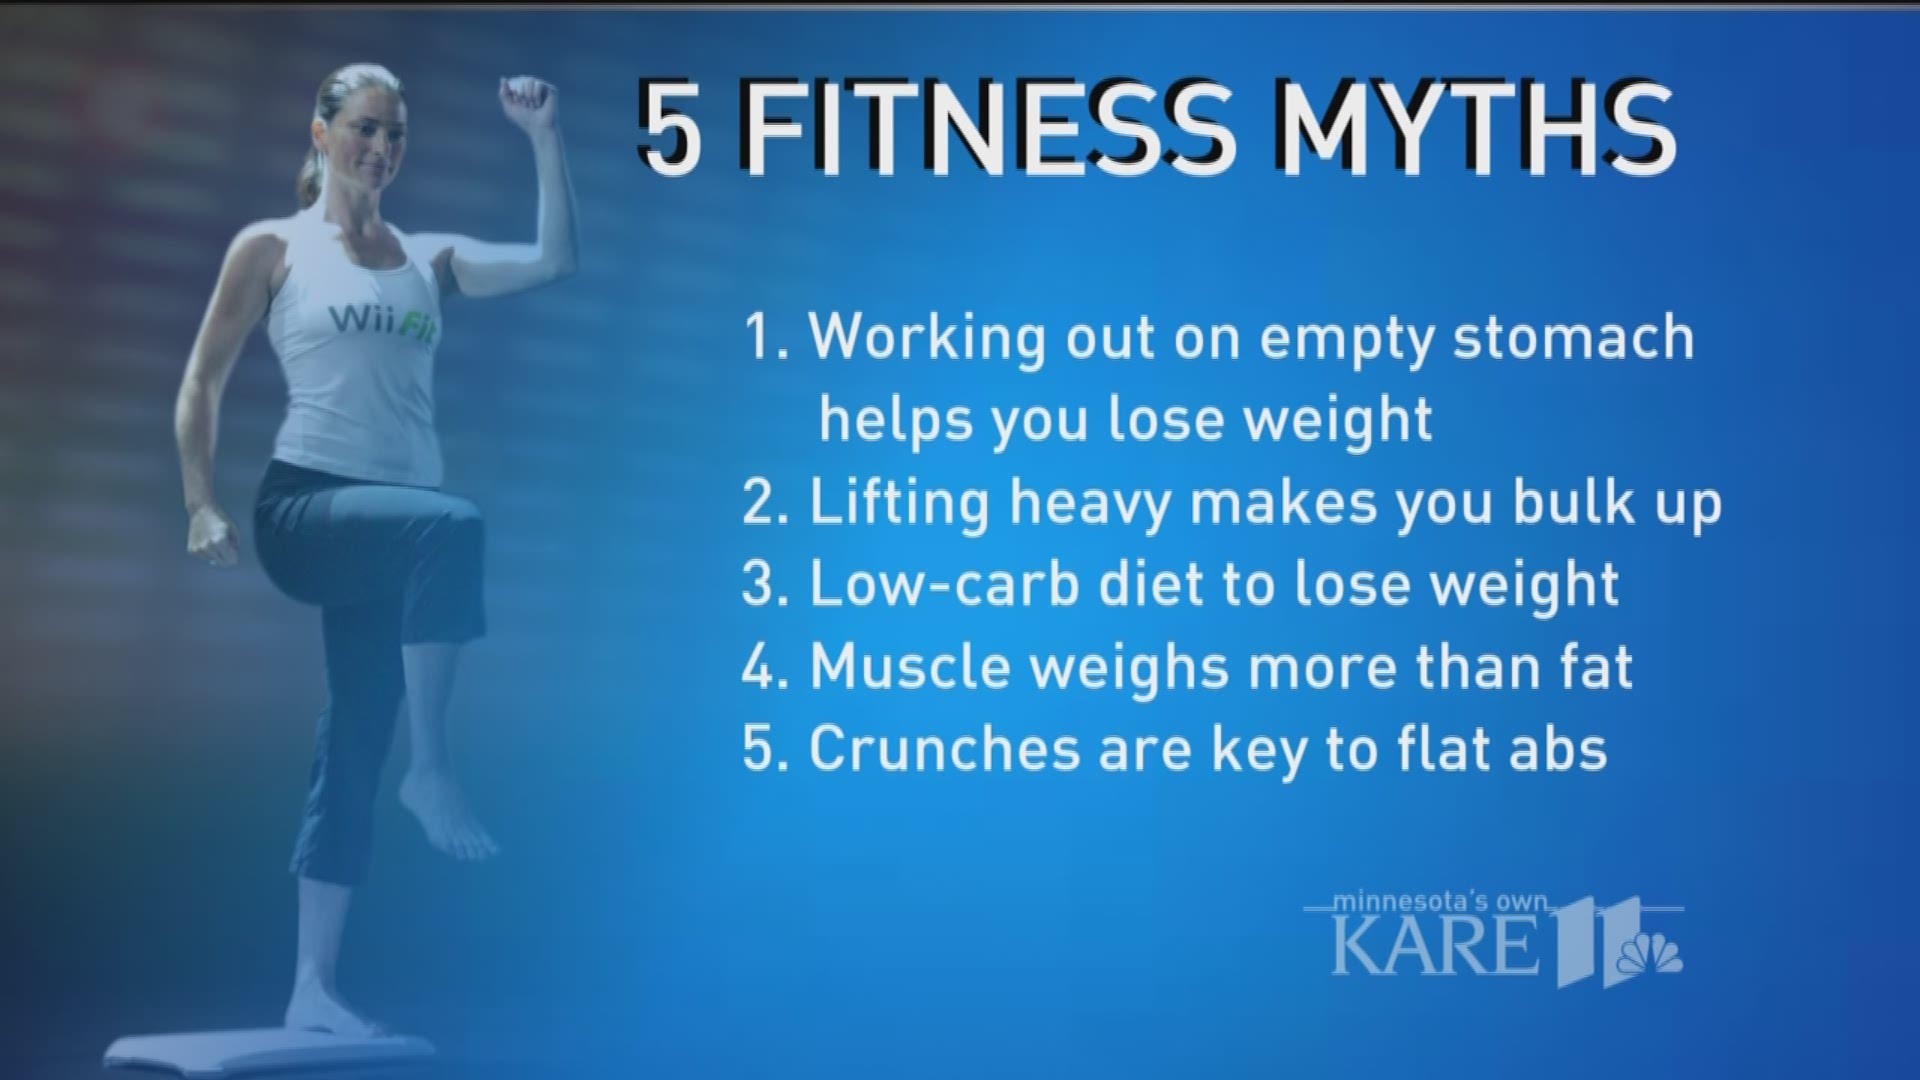 Motivation Monday: Busting fitness myths